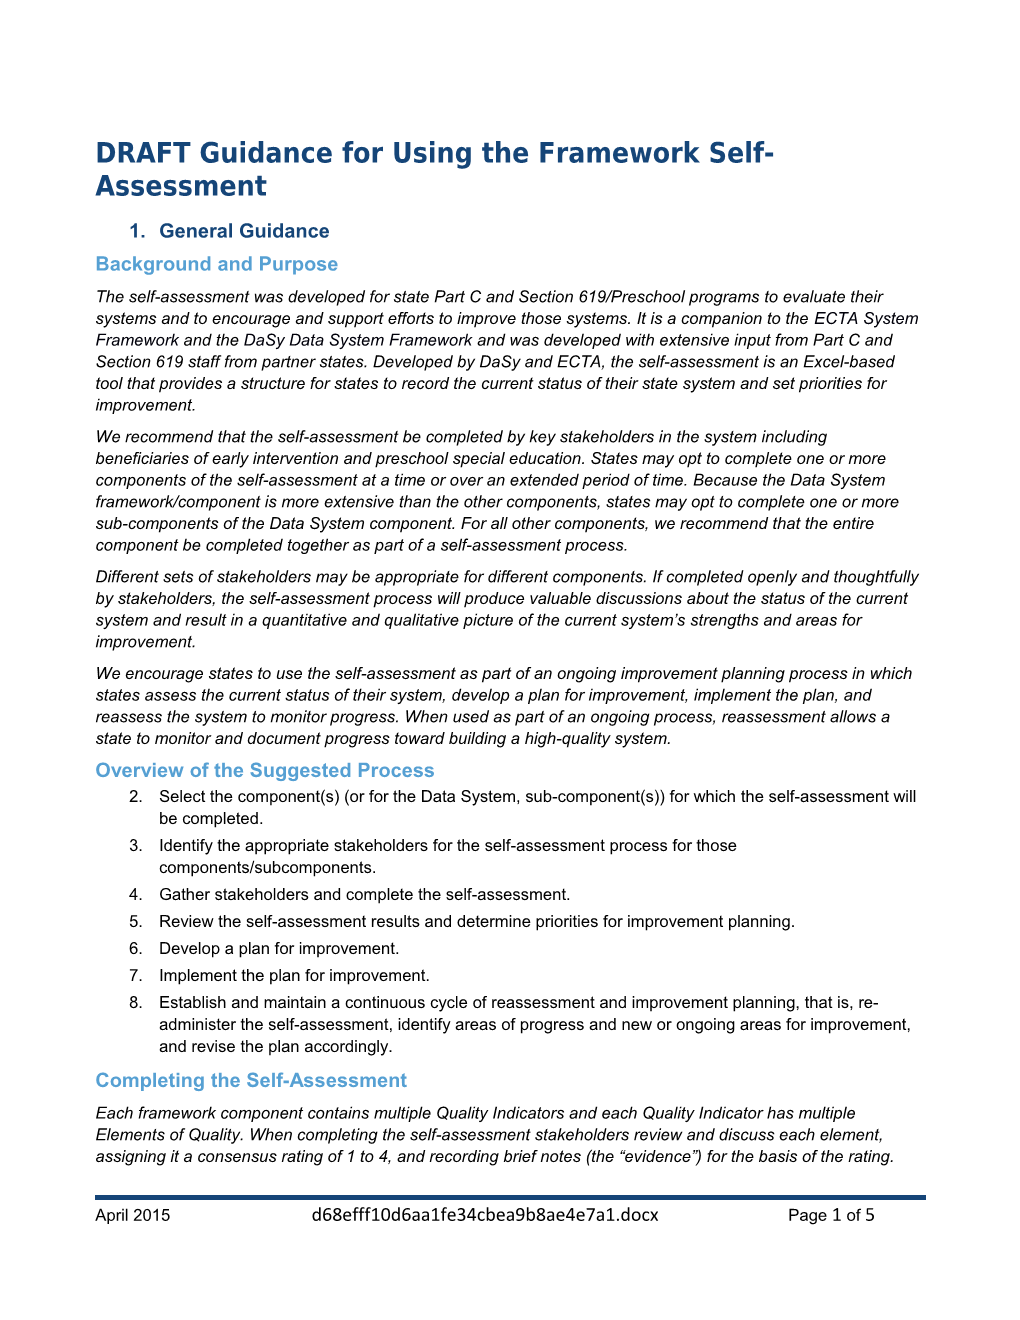 DRAFT Guidance for Using the Framework Self-Assessment